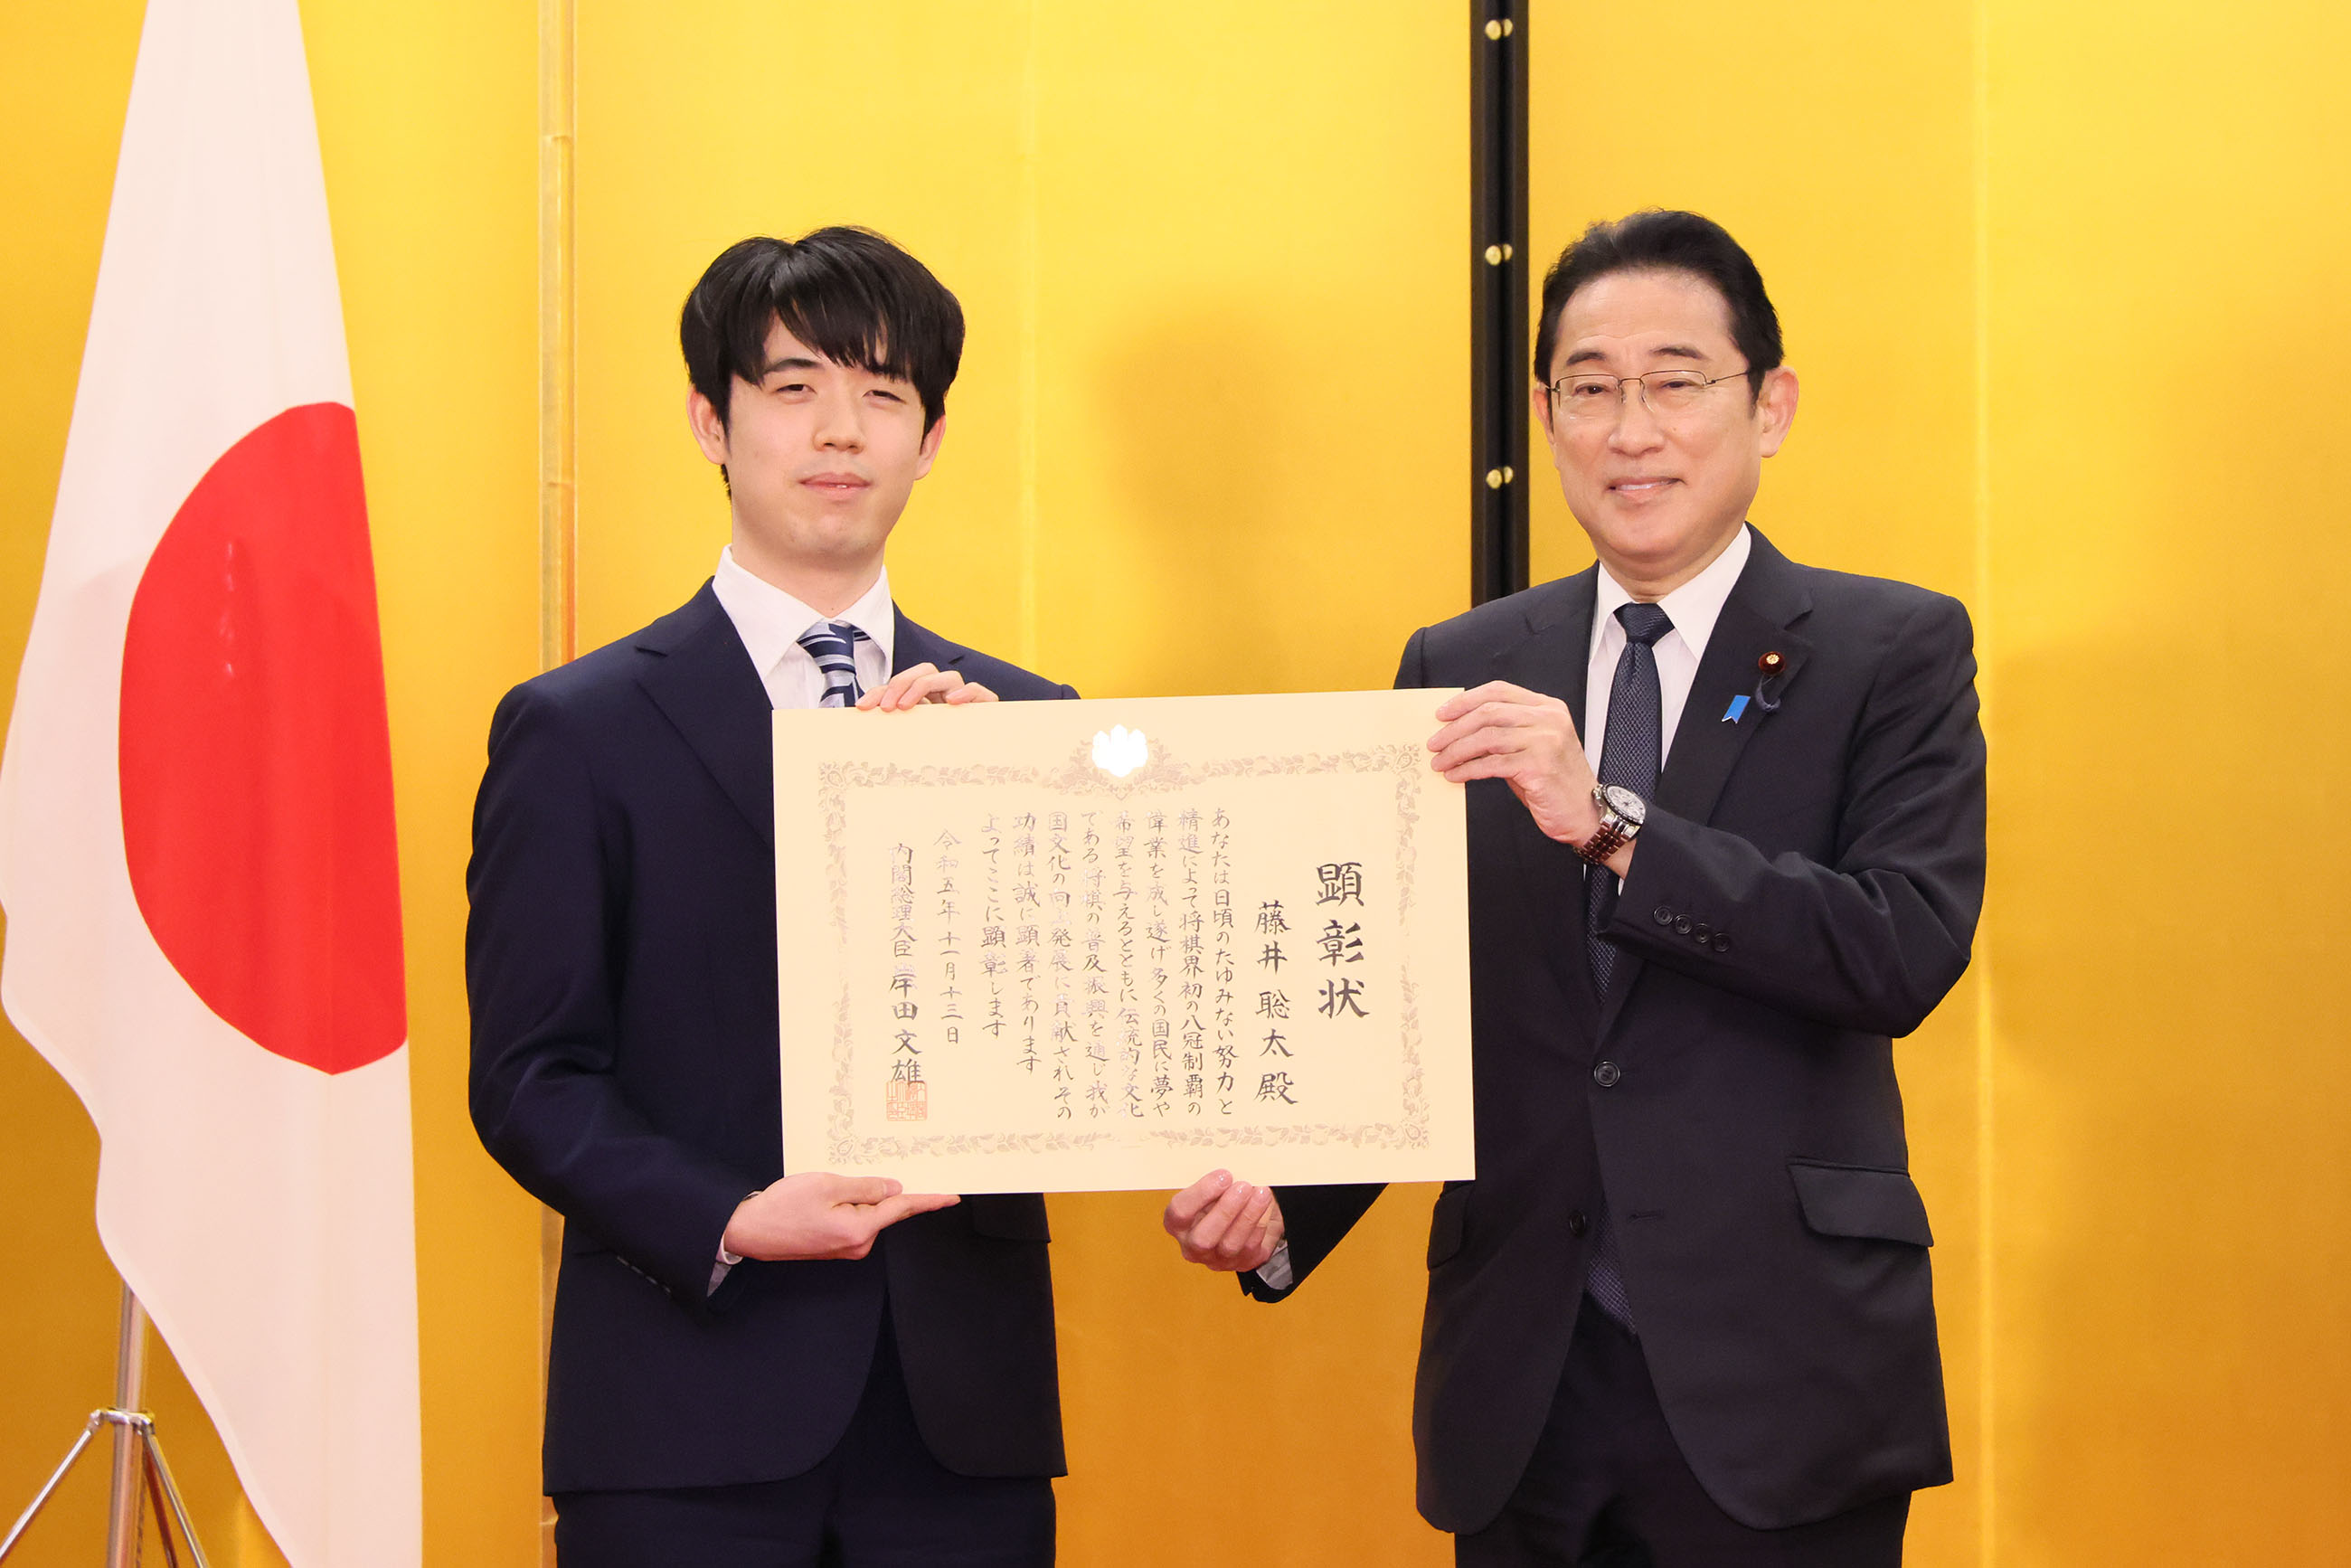 Prime Minister’s Award Ceremony